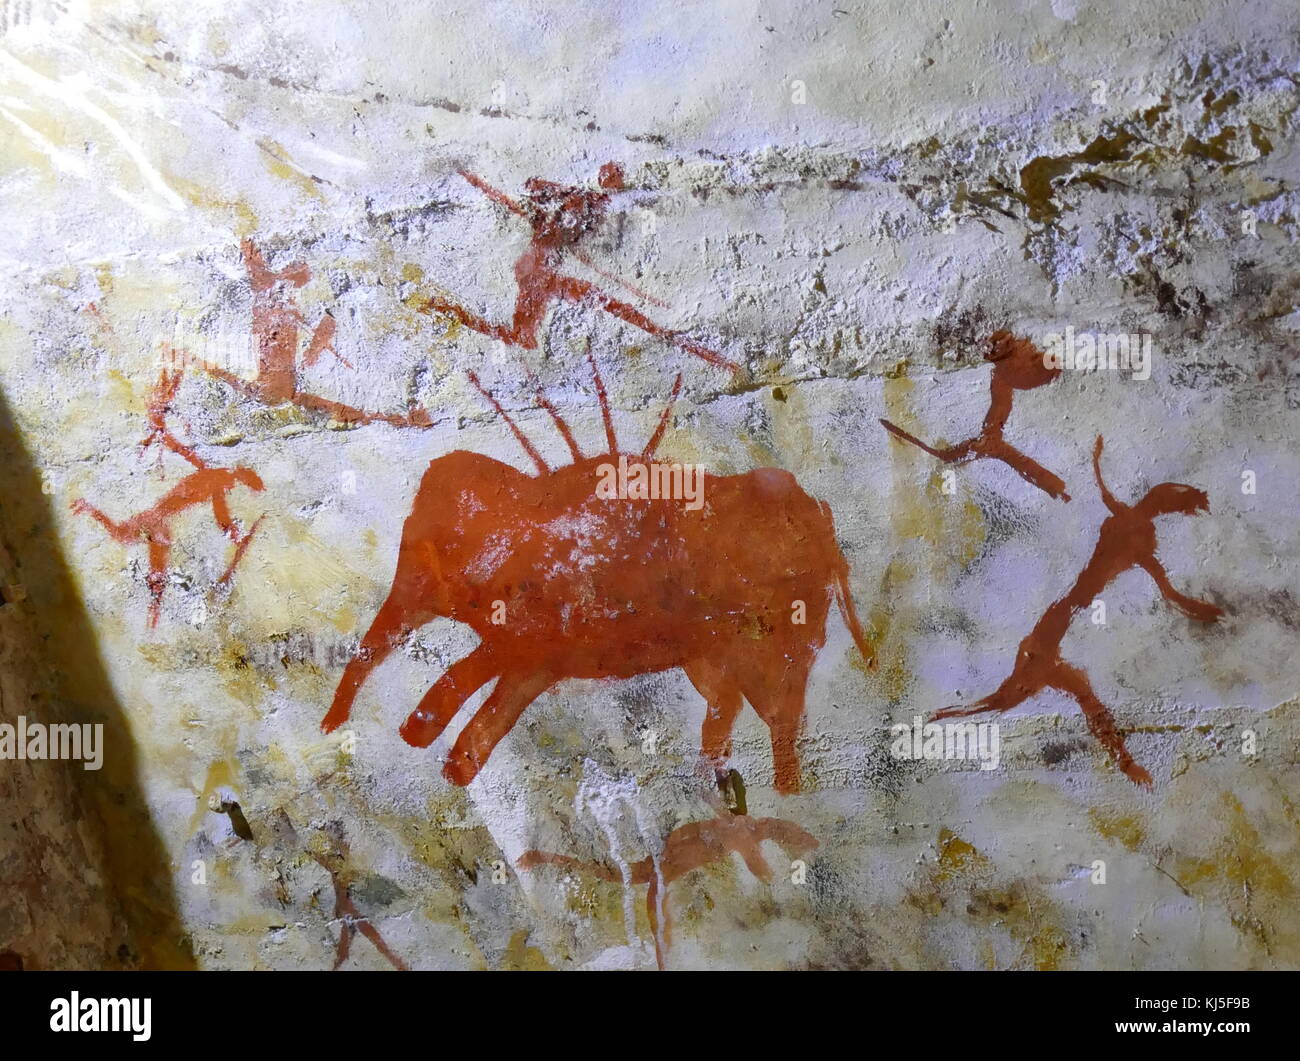 Peinture rupestre trouvé dans la grotte d'Altamira, situé dans la région de Cantabrie, Espagne, datant du paléolithique supérieur. Banque D'Images